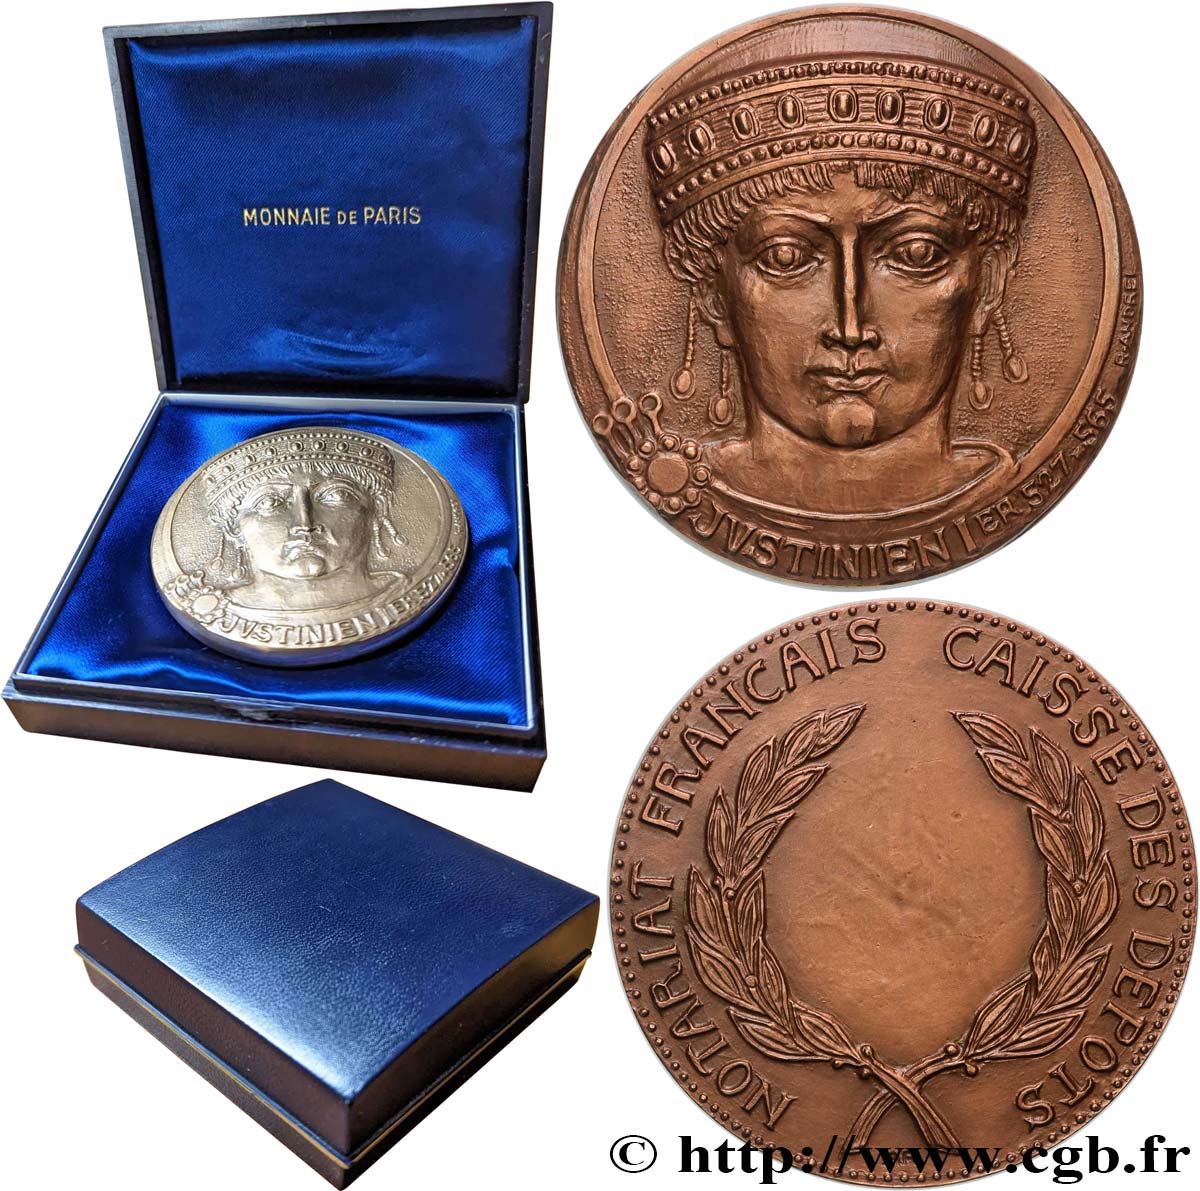 NOTAIRES DU XIXe SIECLE Médaille, Justinien Ier, Caisse des dépôts SUP